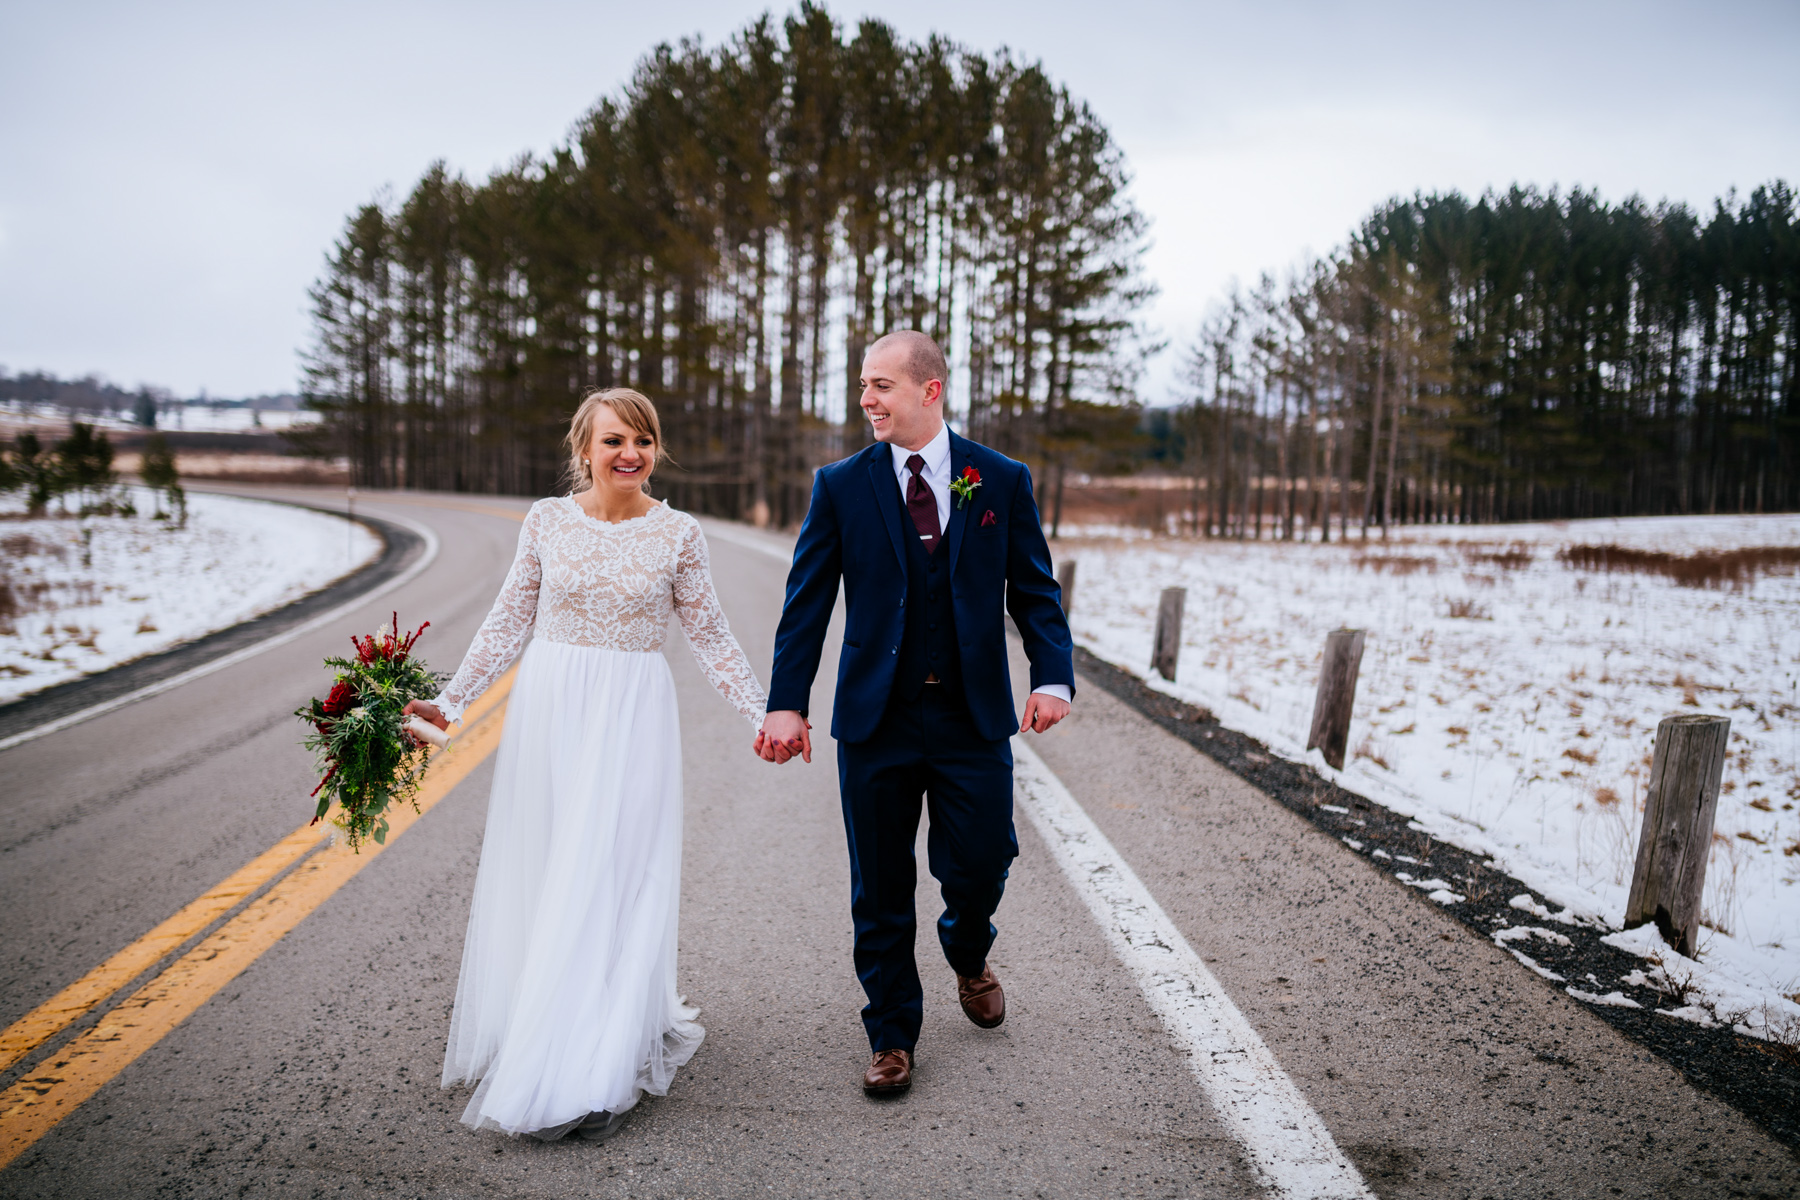 bride and groom walking down road